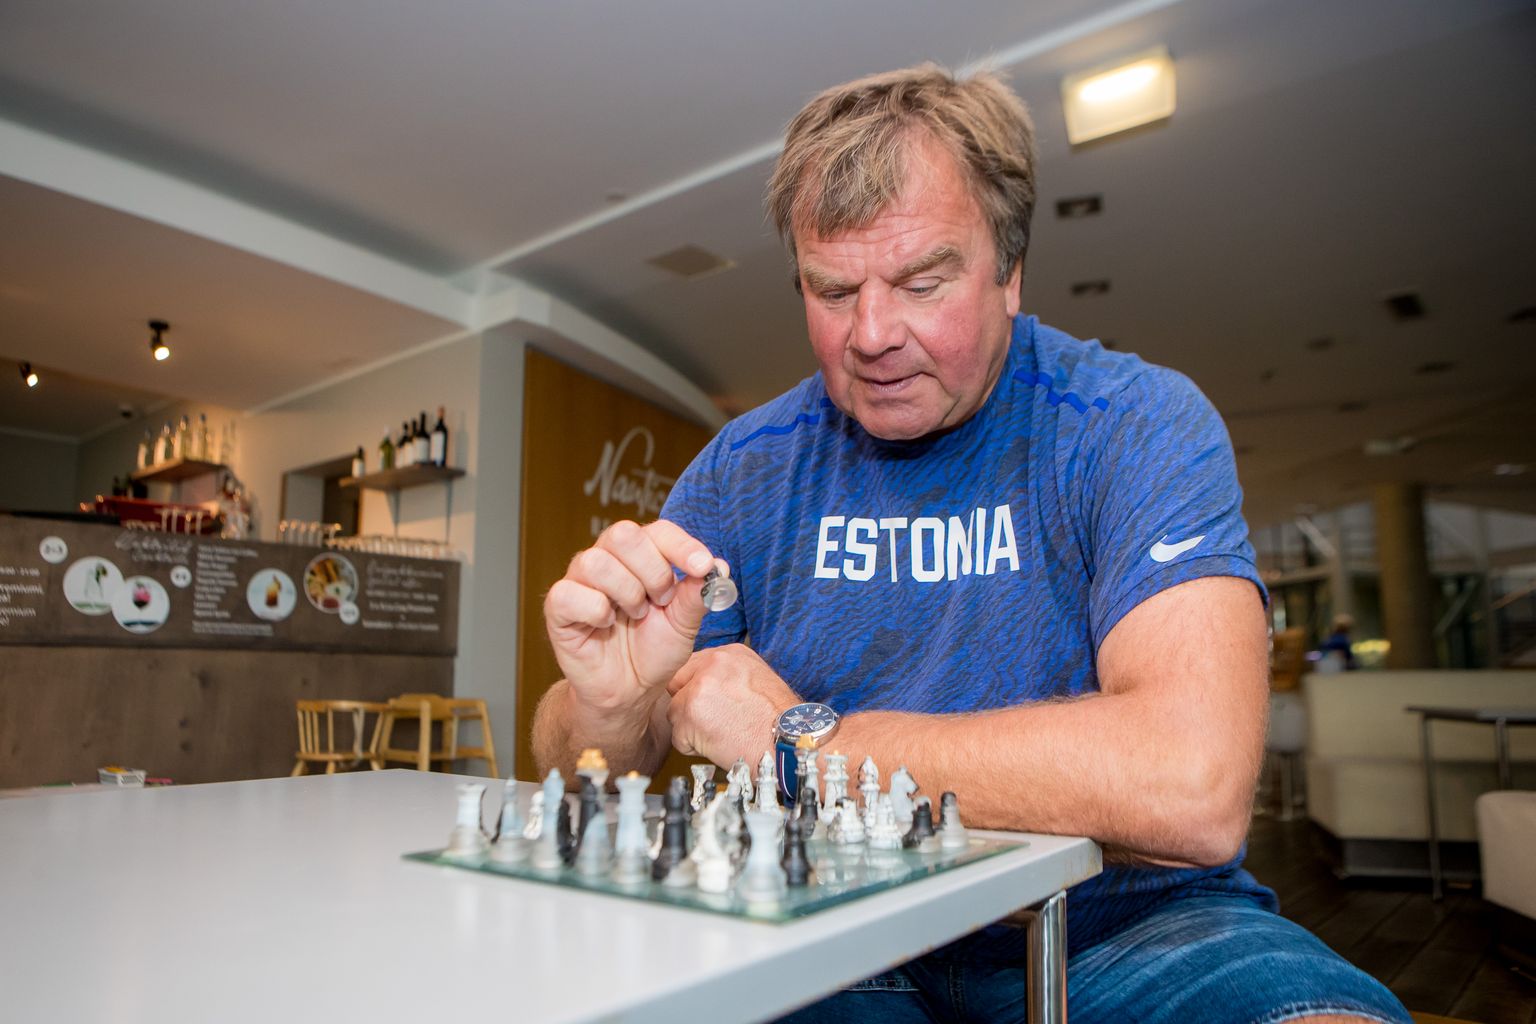 ESIMENE KÄIK: Urmas Randma on kindel, et Saaremaa I malefestival paneb aluse traditsioonile, millest võib saada Saaremaa spordielu üks visiitkaarte.